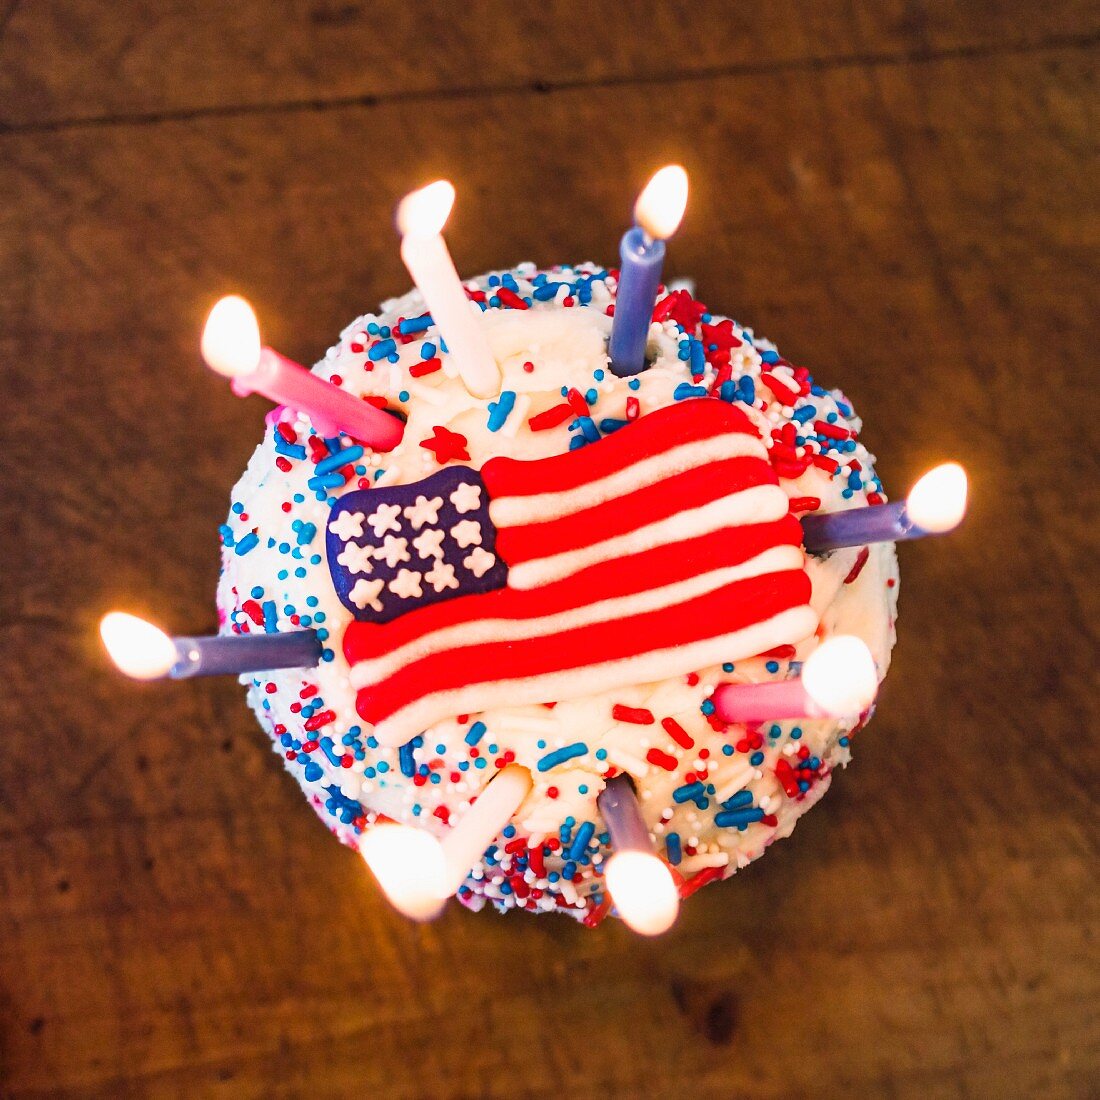 Geburtstagskuchen mit der amerikanischen Flagge als Verzierung